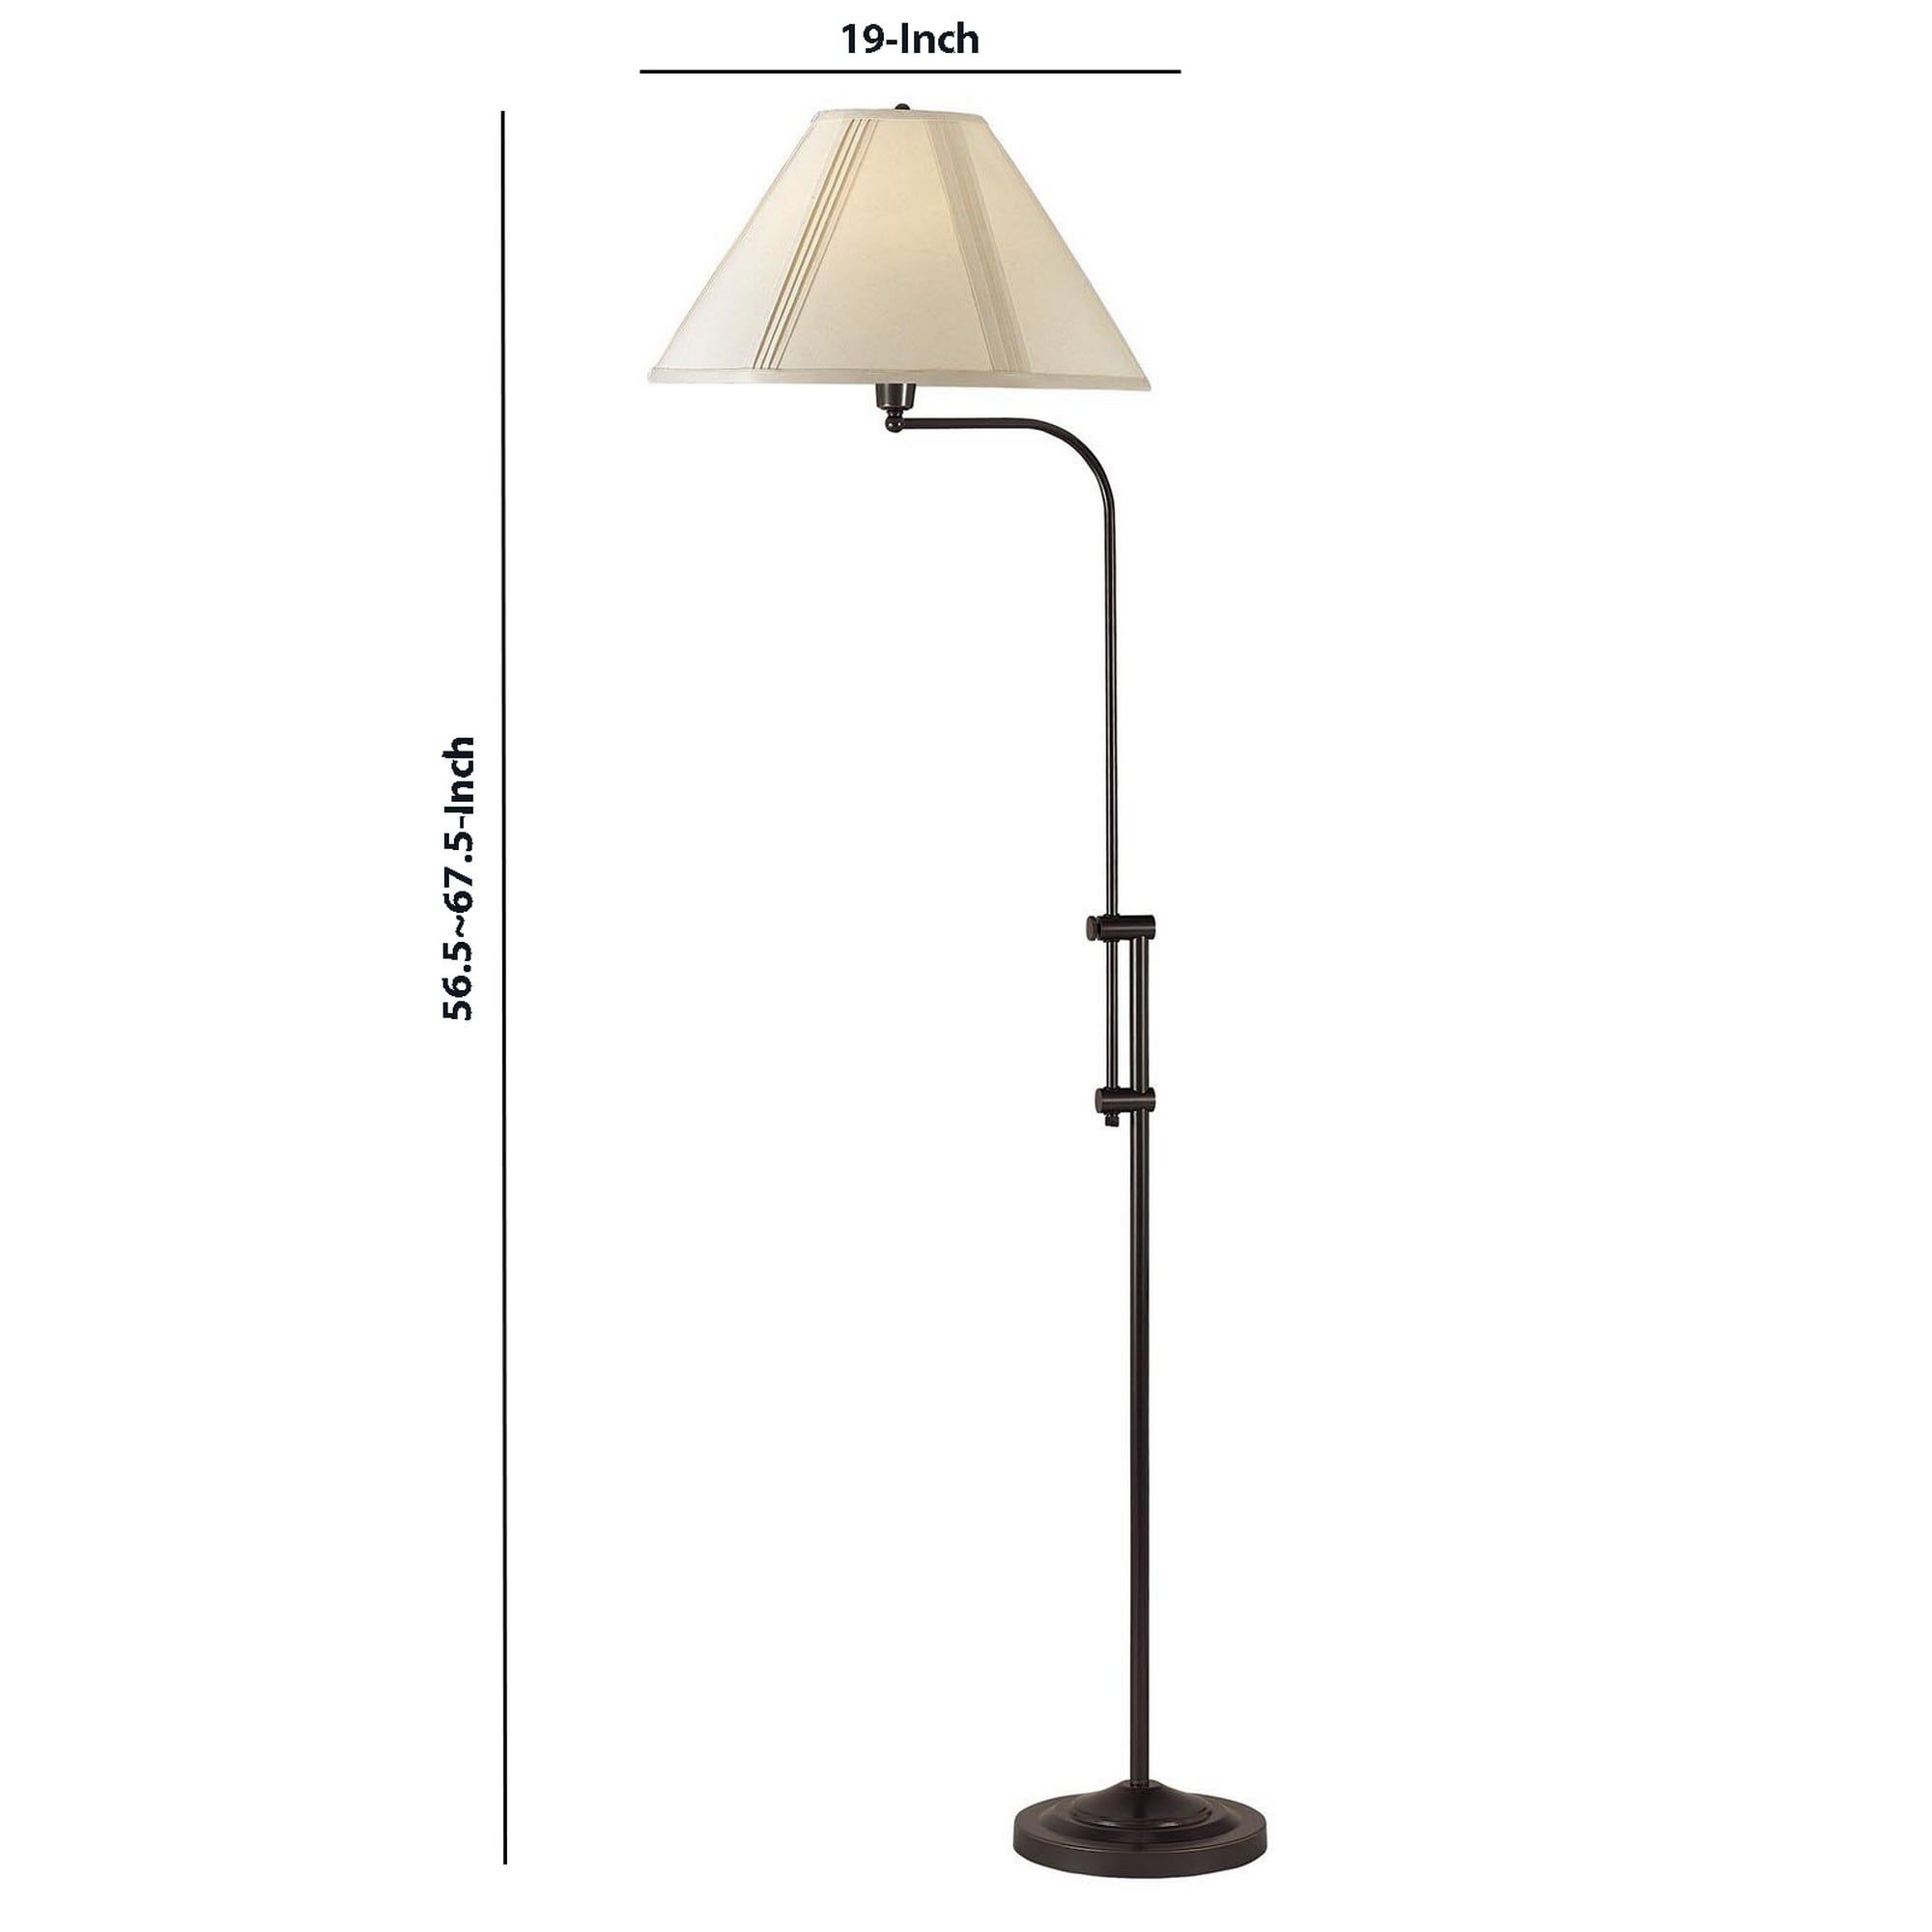 3 Way Metal Floor Lamp With And Adjustable Height Mechanism, Bronze –  Overstock – 31684760 Regarding Adjustable Height Floor Lamps (Photo 1 of 15)